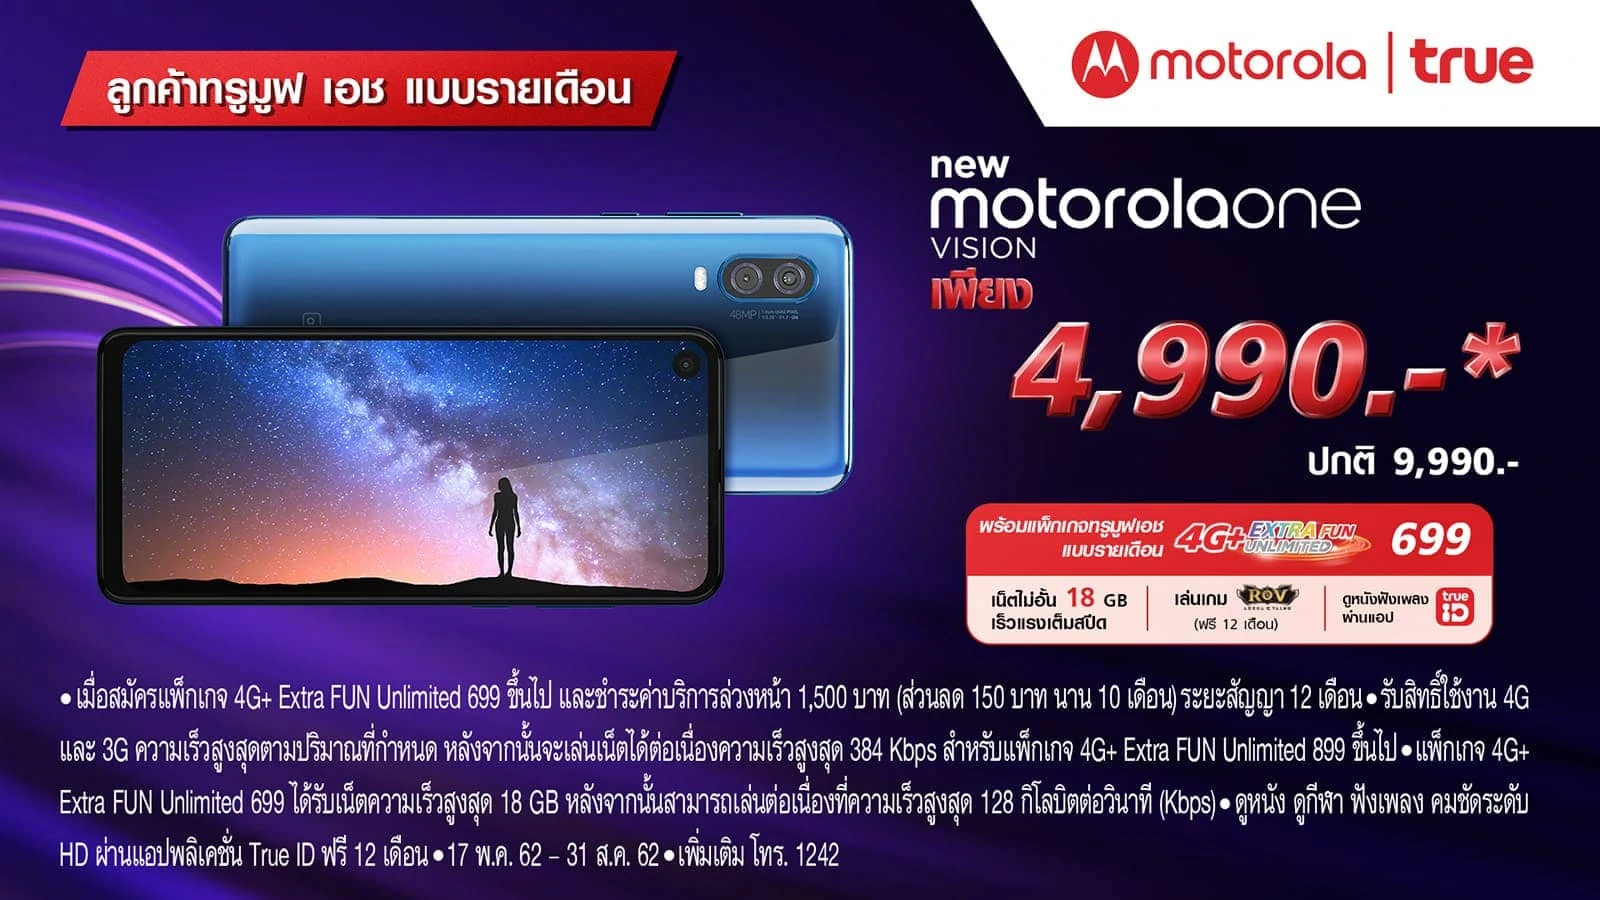 รีวิว กล้อง Motorola One Vision กับ Bangkok At Night